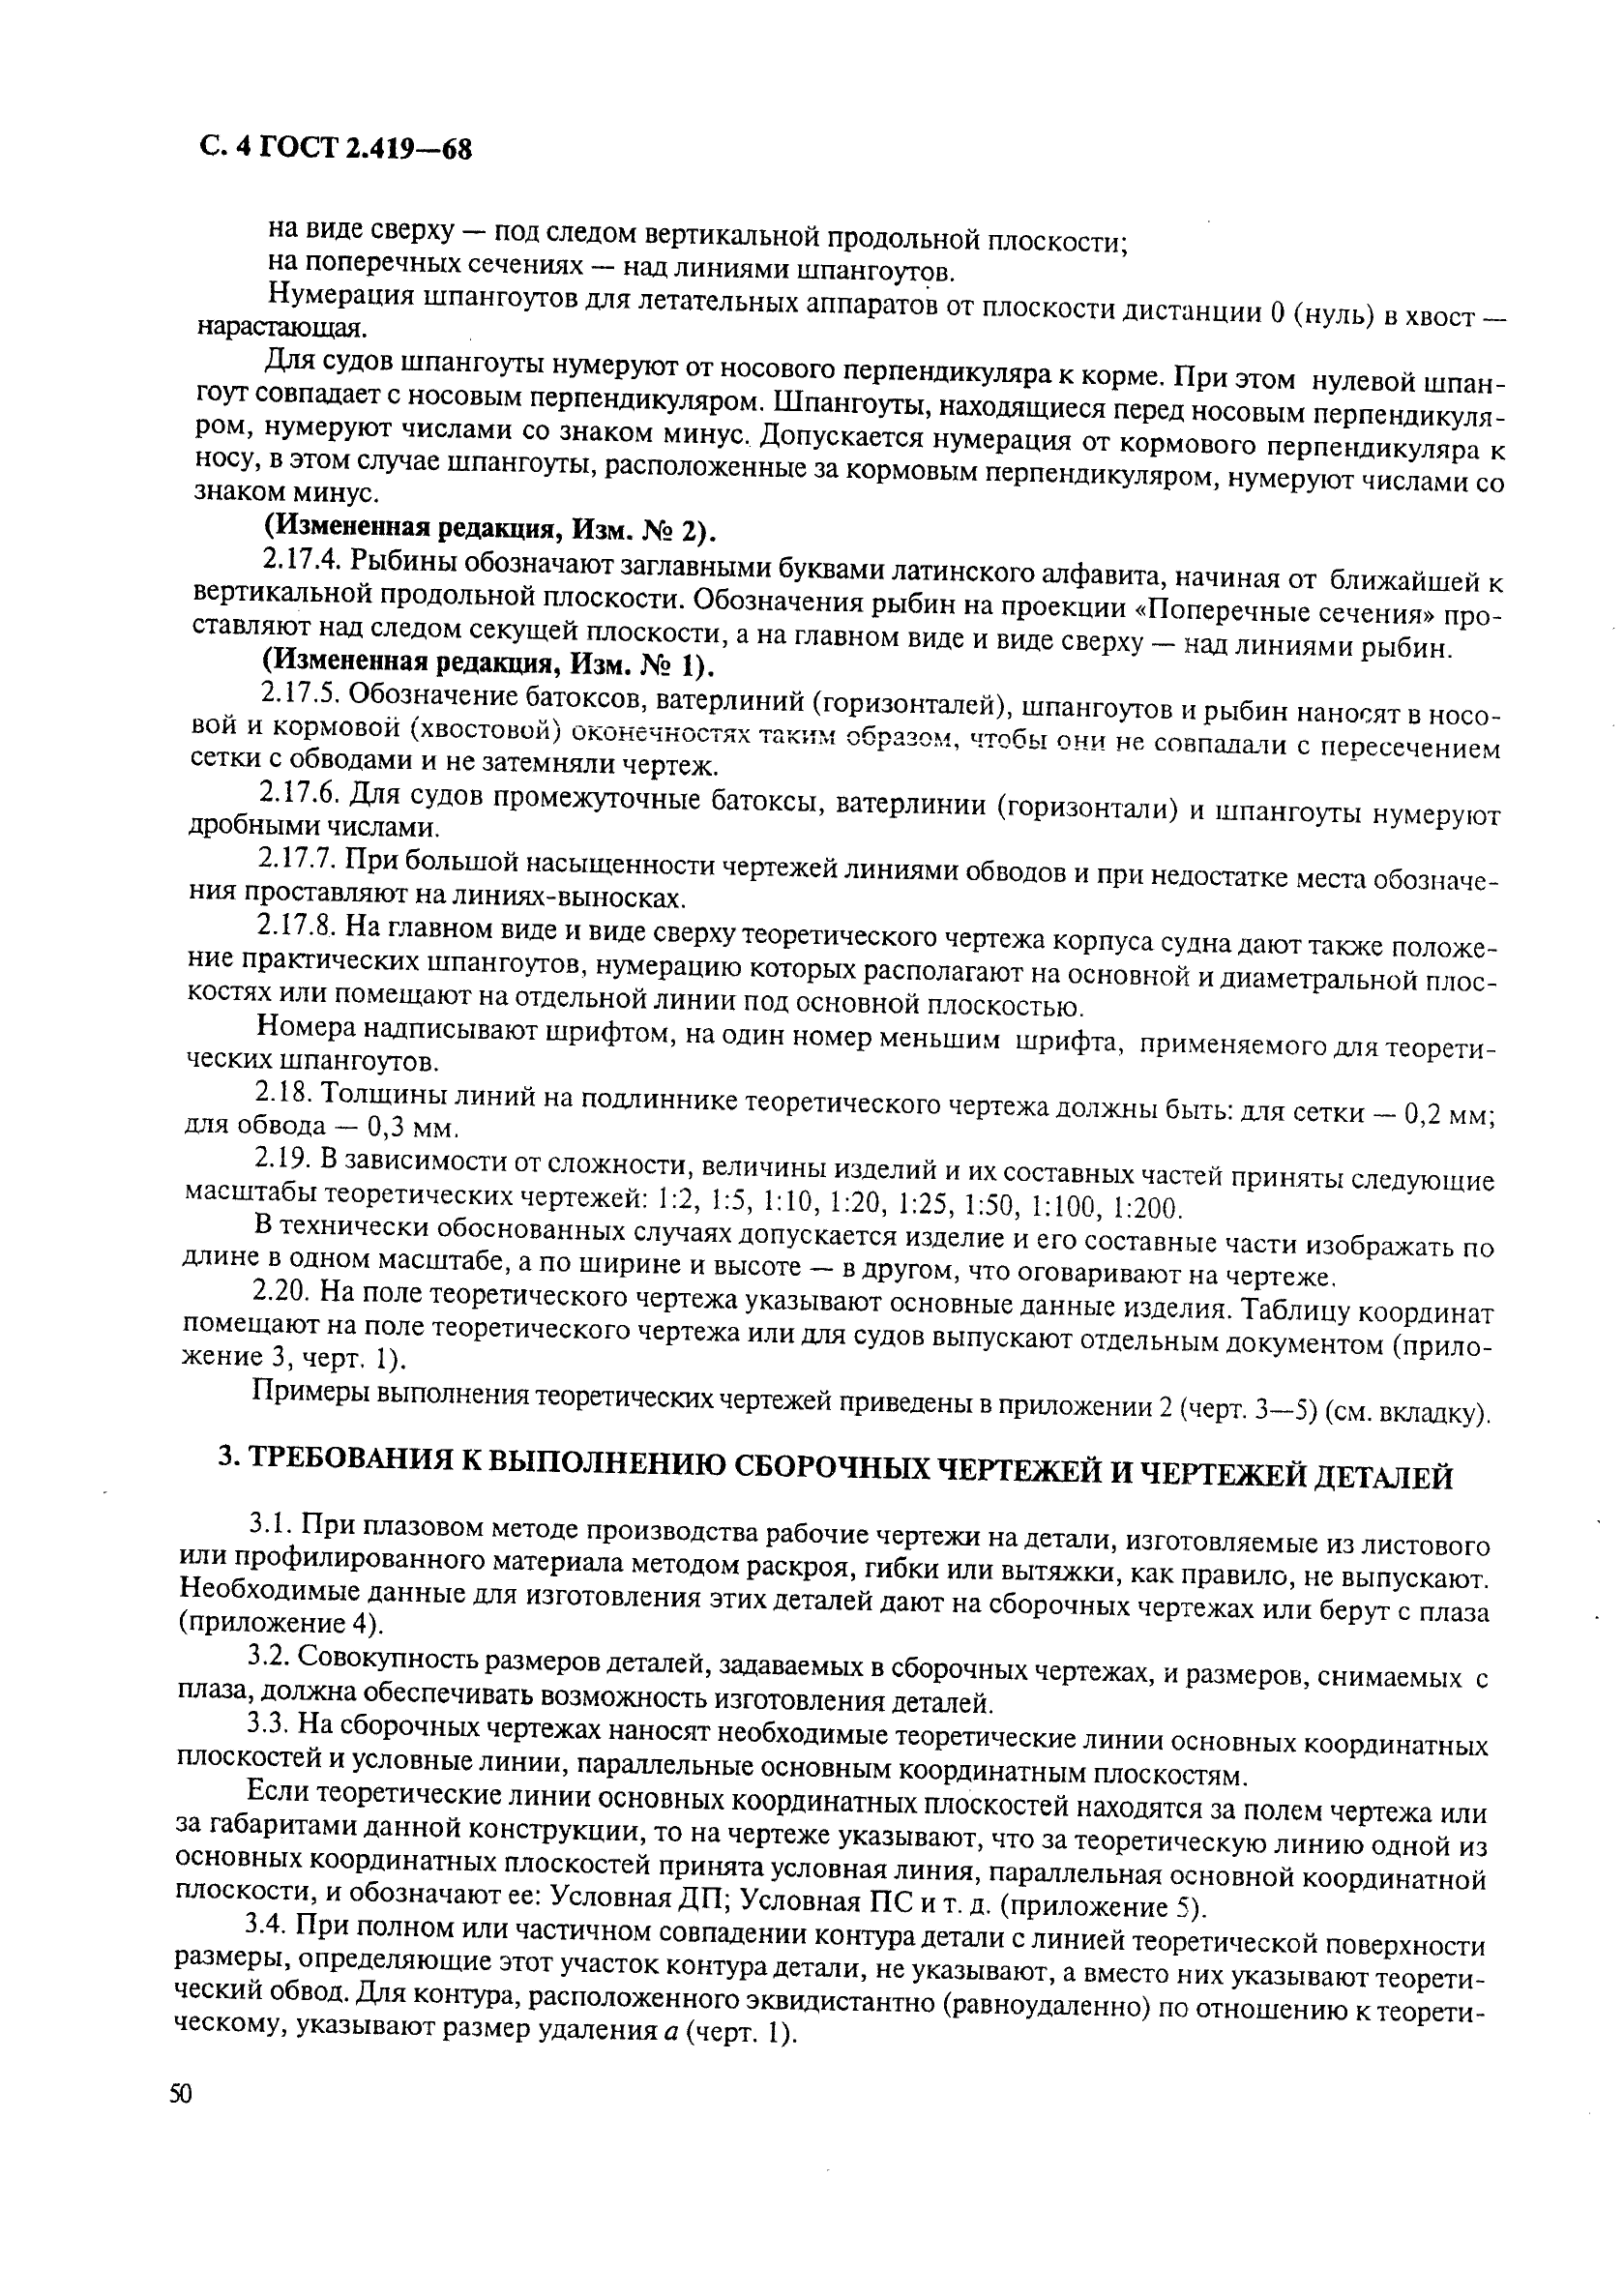 ГОСТ 2.419-68 Единая система конструкторской документации. Правила выполнения документации при плазовом методе производства (фото 4 из 18)